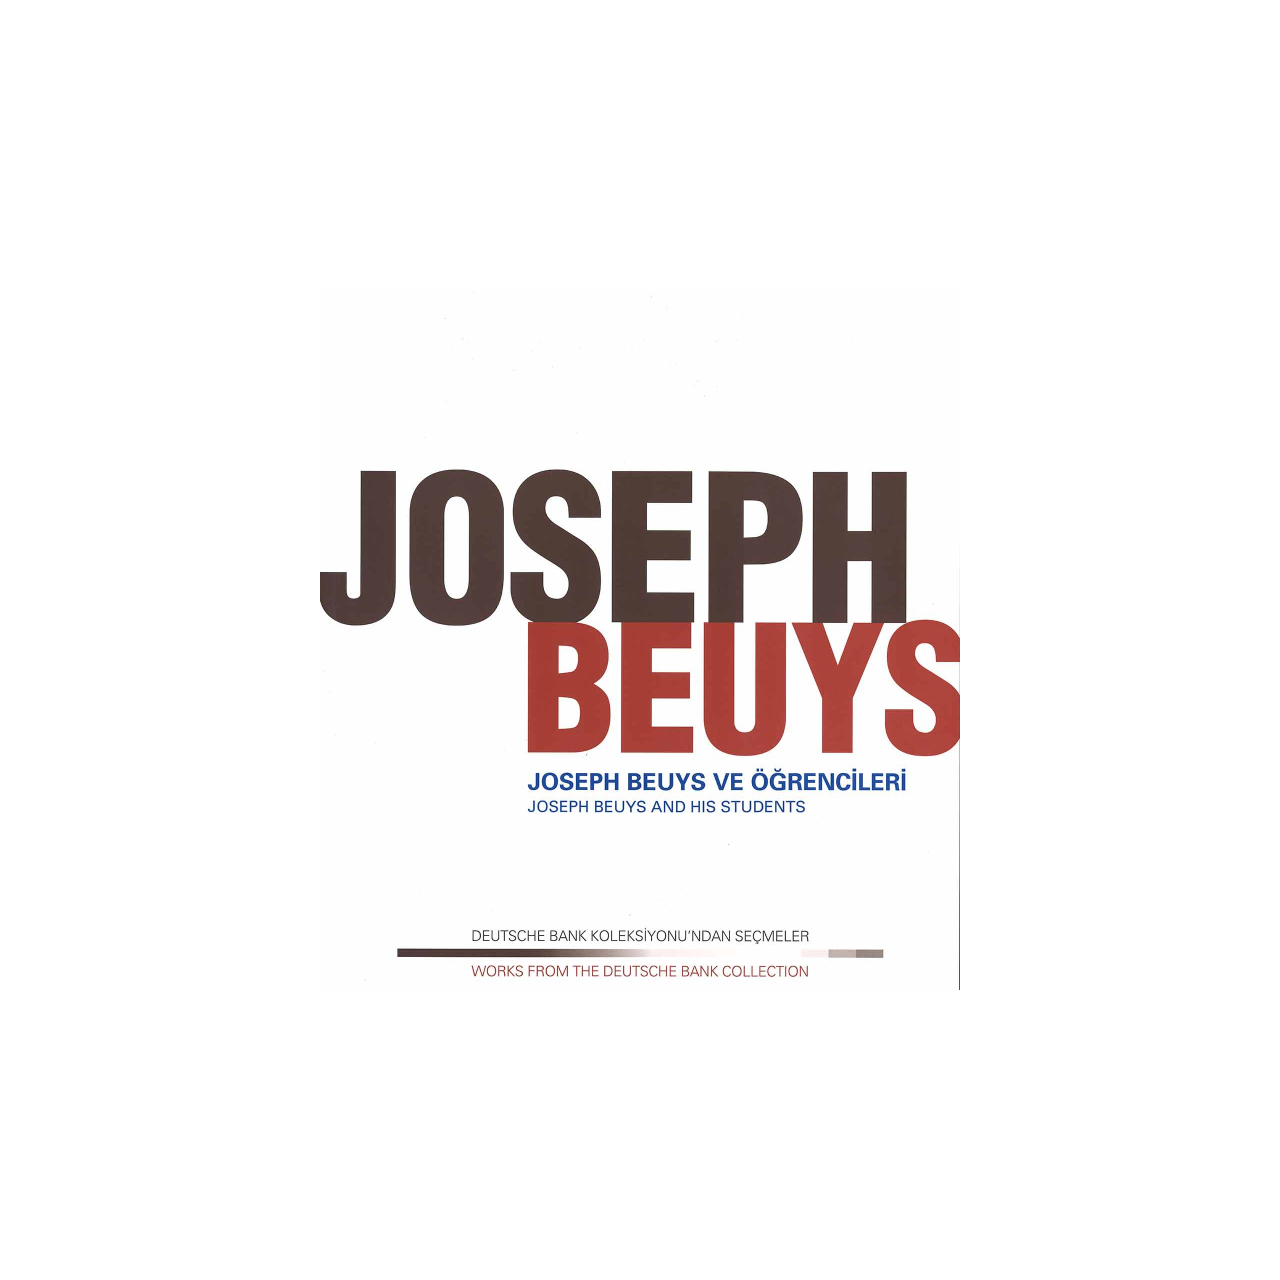 "Joseph Beuys ve Öğrencileri - Deutsche Bank Koleksiyonu" - Katalog